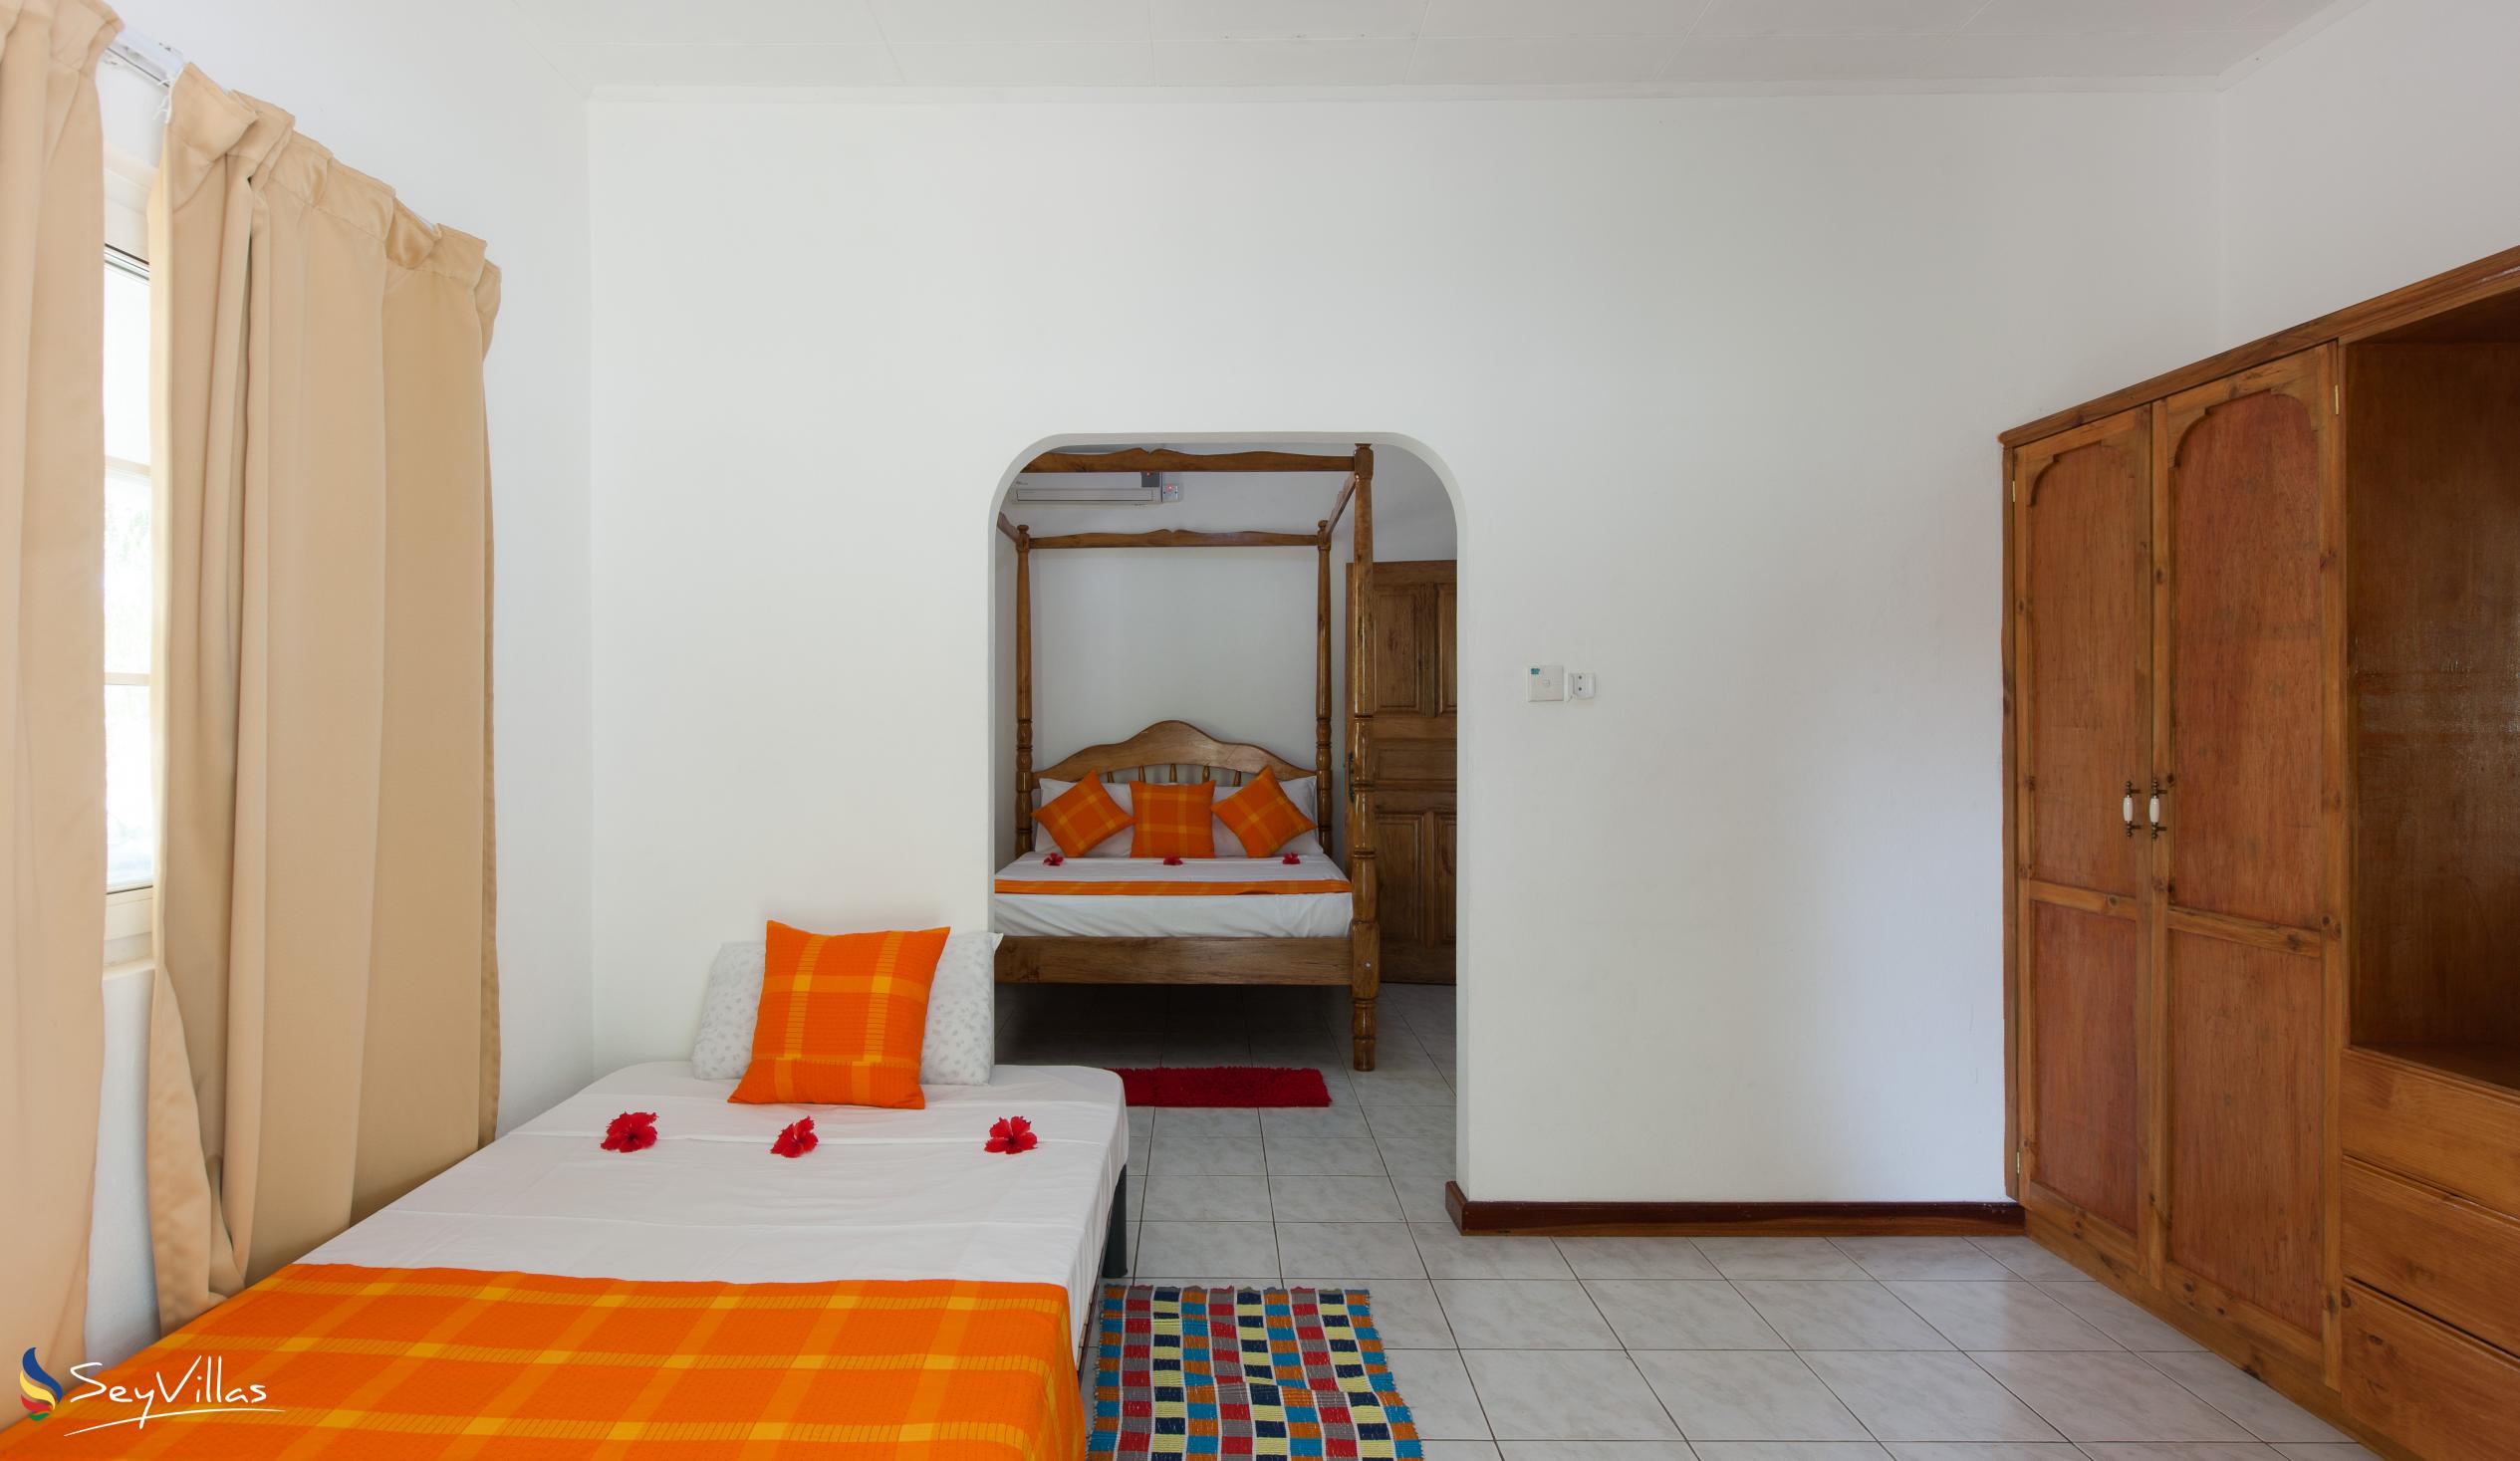 Foto 46: Villa Confort - Chambre familiale 1 - Praslin (Seychelles)